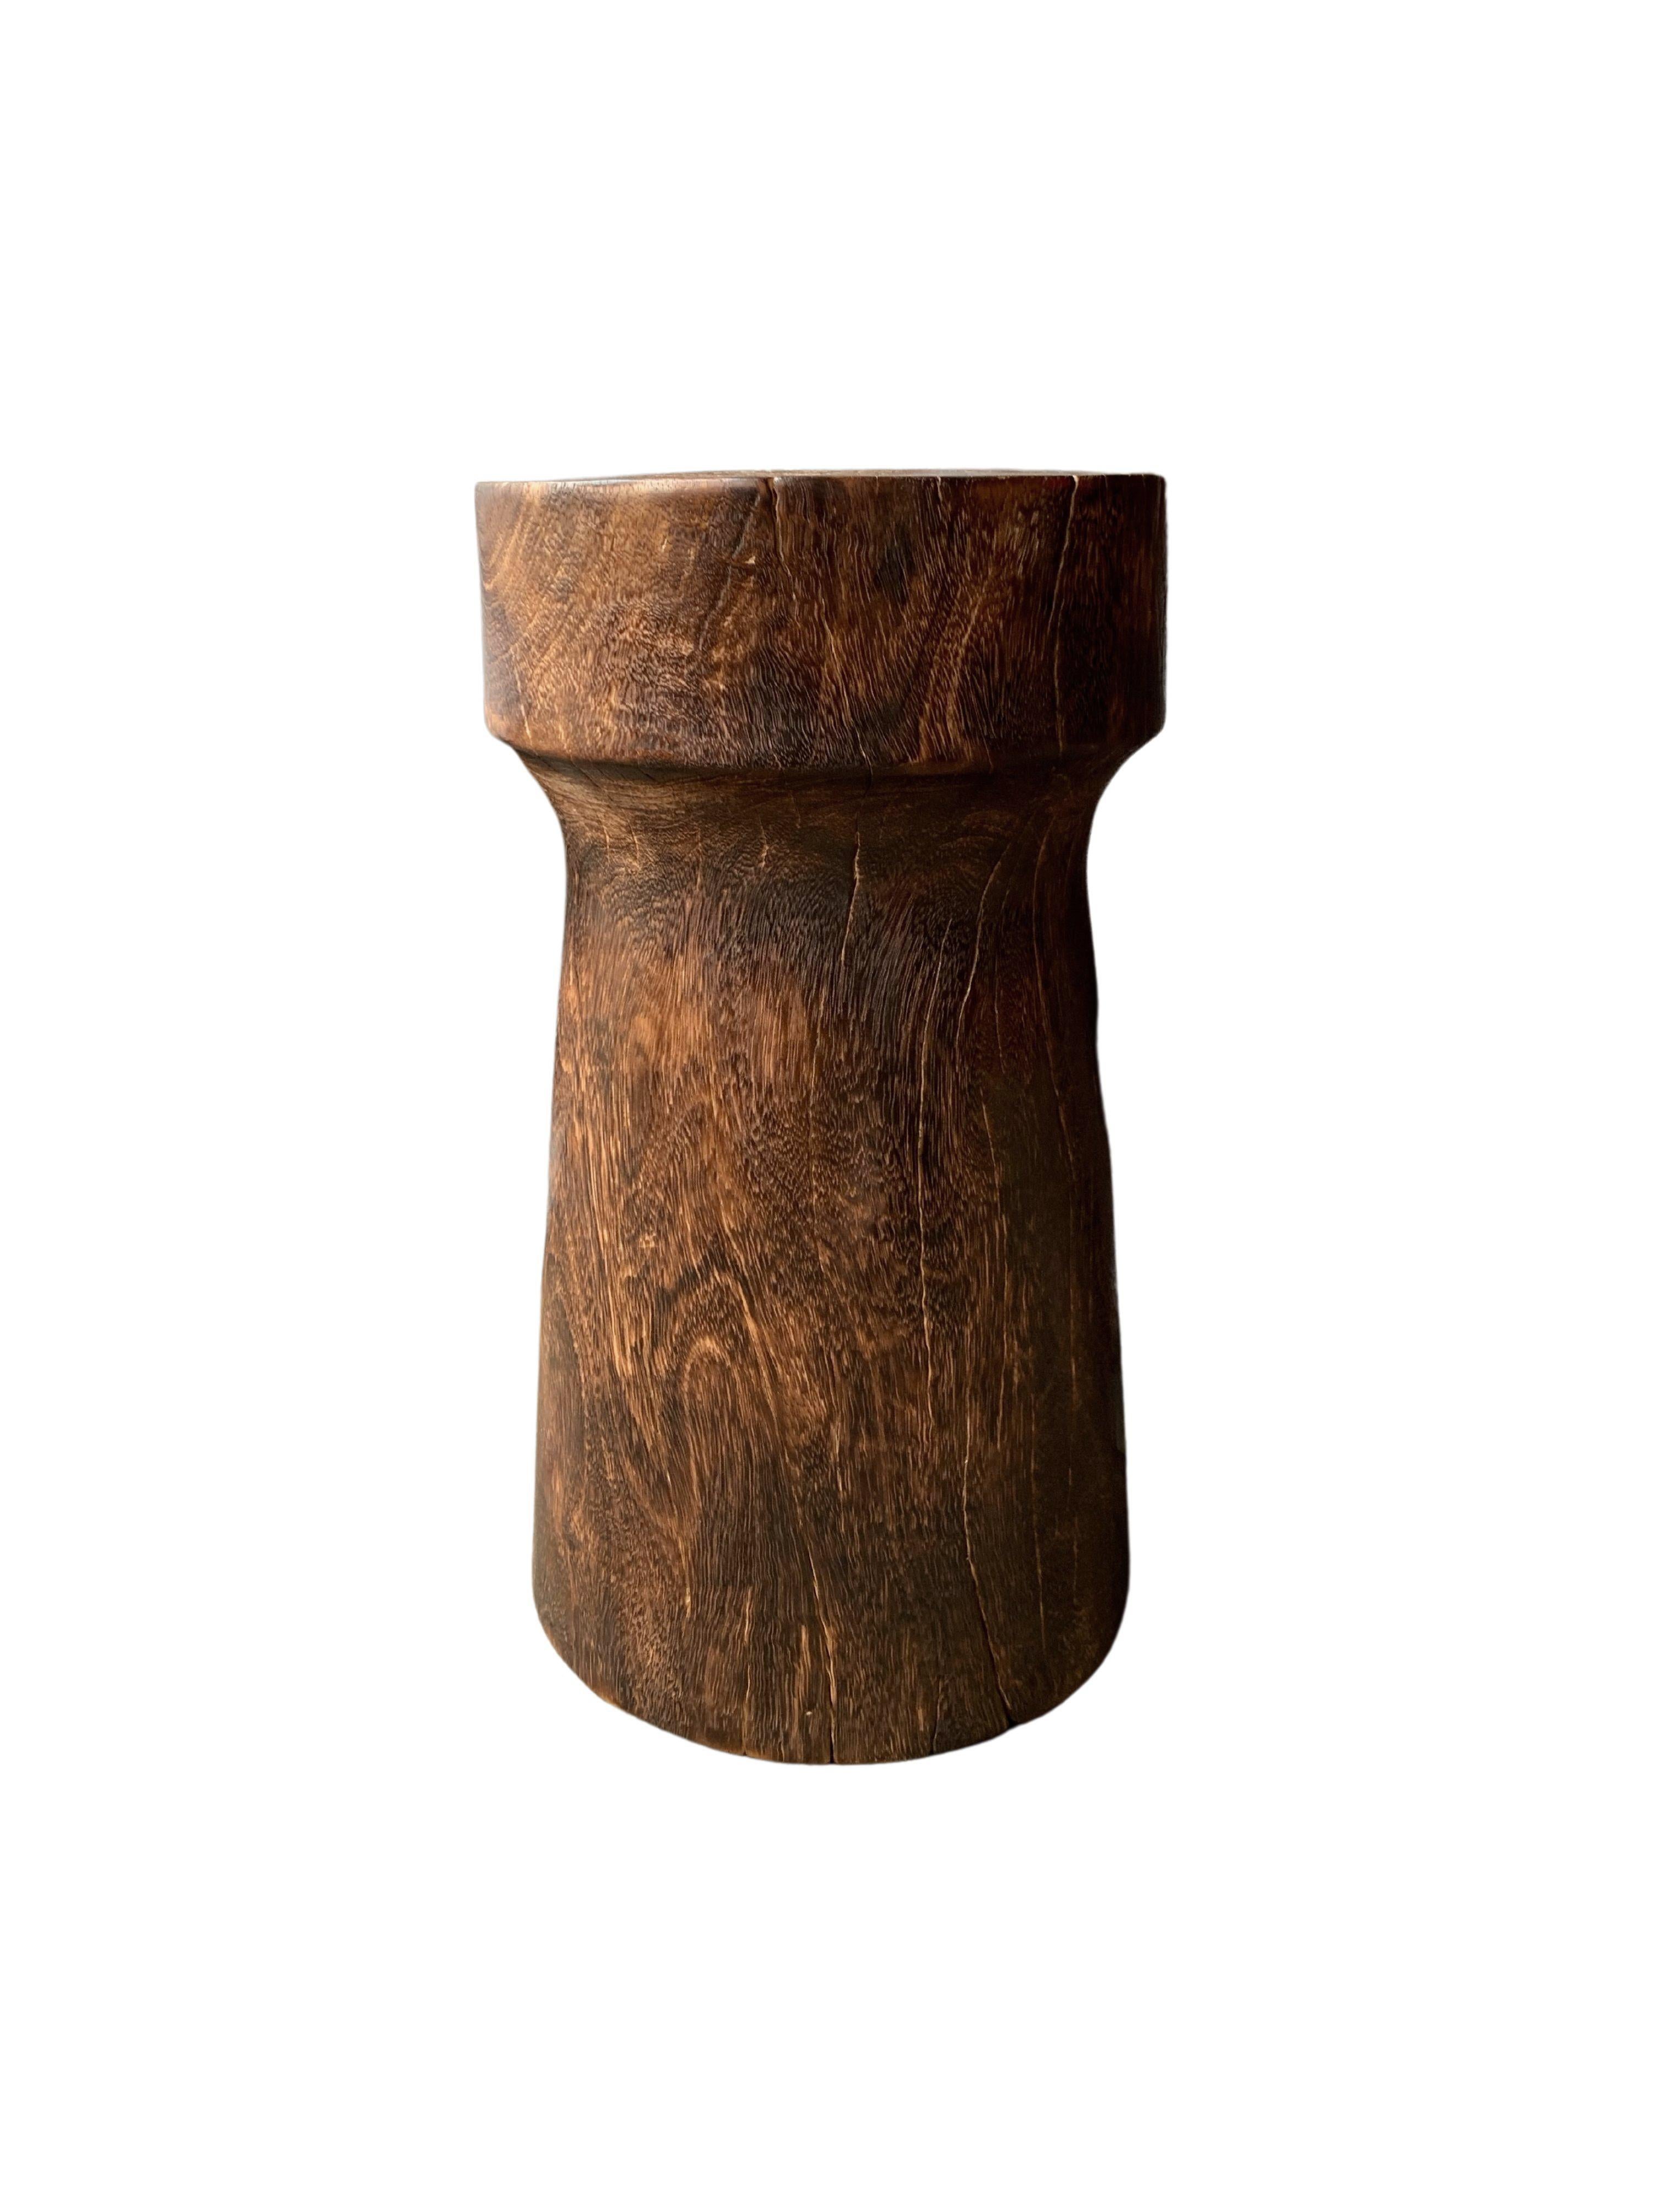 Ein wunderschön skulpturaler Beistelltisch. Mit seiner neutralen Pigmentierung und der dezenten Holzstruktur passt er perfekt in jeden Raum. Ein einzigartiges skulpturales und vielseitiges Stück. Dieser Tisch wurde aus Mangoholz gefertigt.

